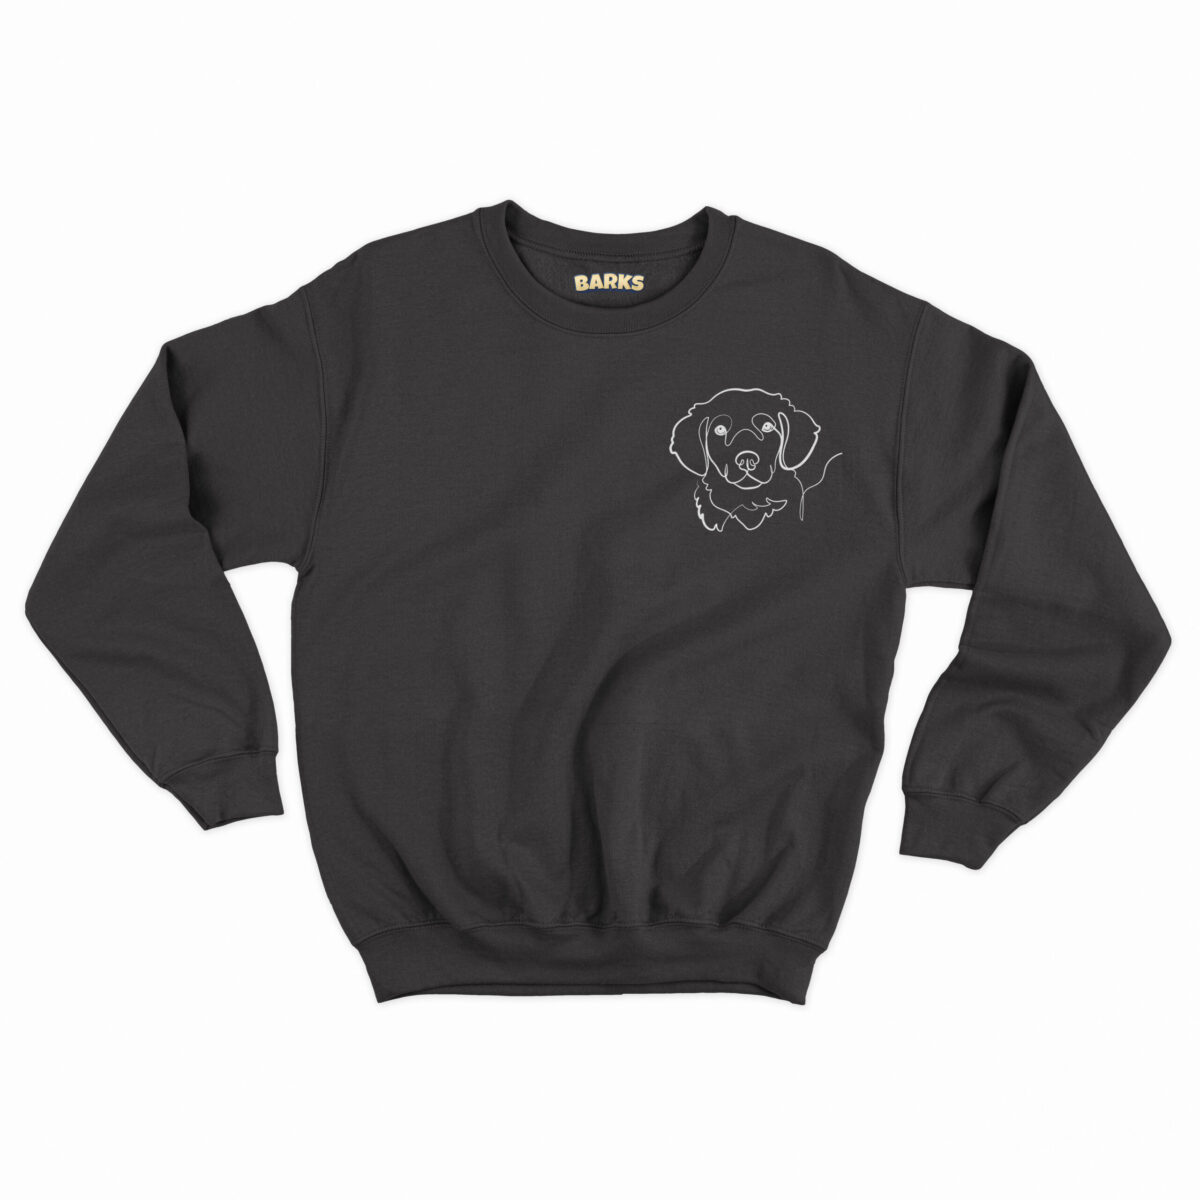 backs gepersonaliseerd hondenportret unisex sweater zwart